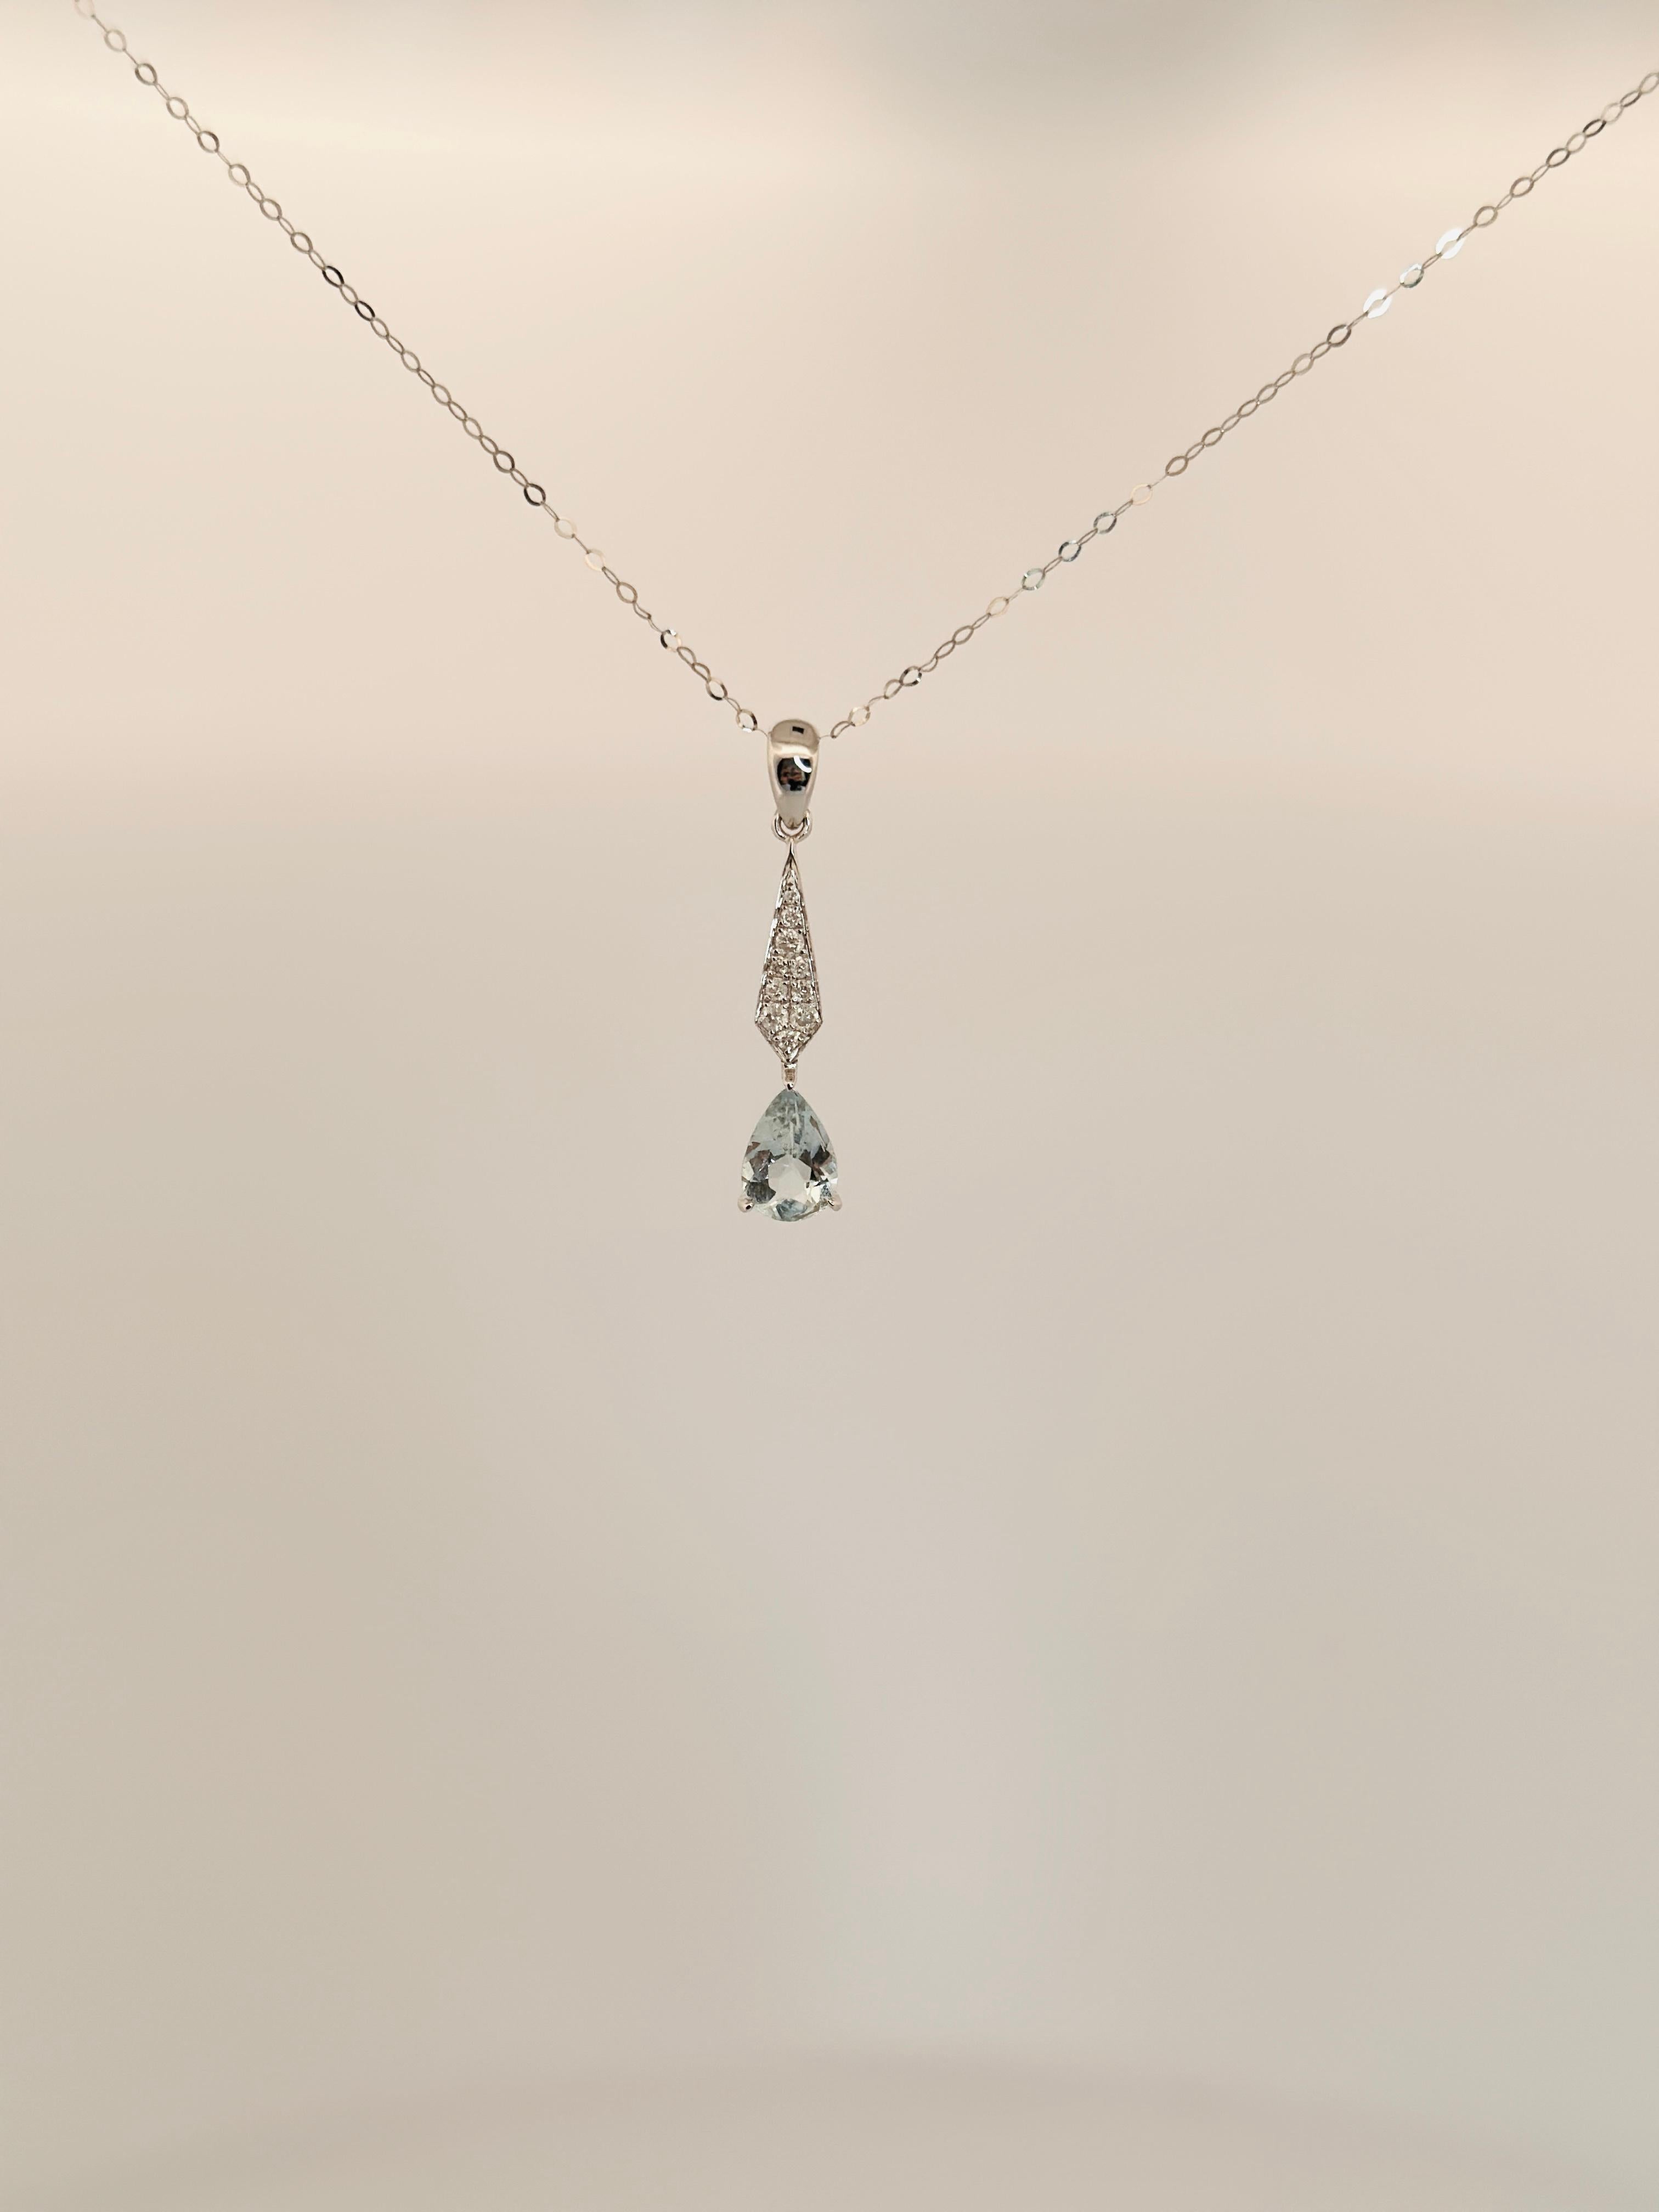 Un collier pendentif en or 18 carats avec diamants et aigue-marine en forme de goutte est un bijou fabriqué en or 18 carats et comportant une aigue-marine en forme de goutte avec des diamants. La pierre aigue-marine est généralement d'un bleu pâle